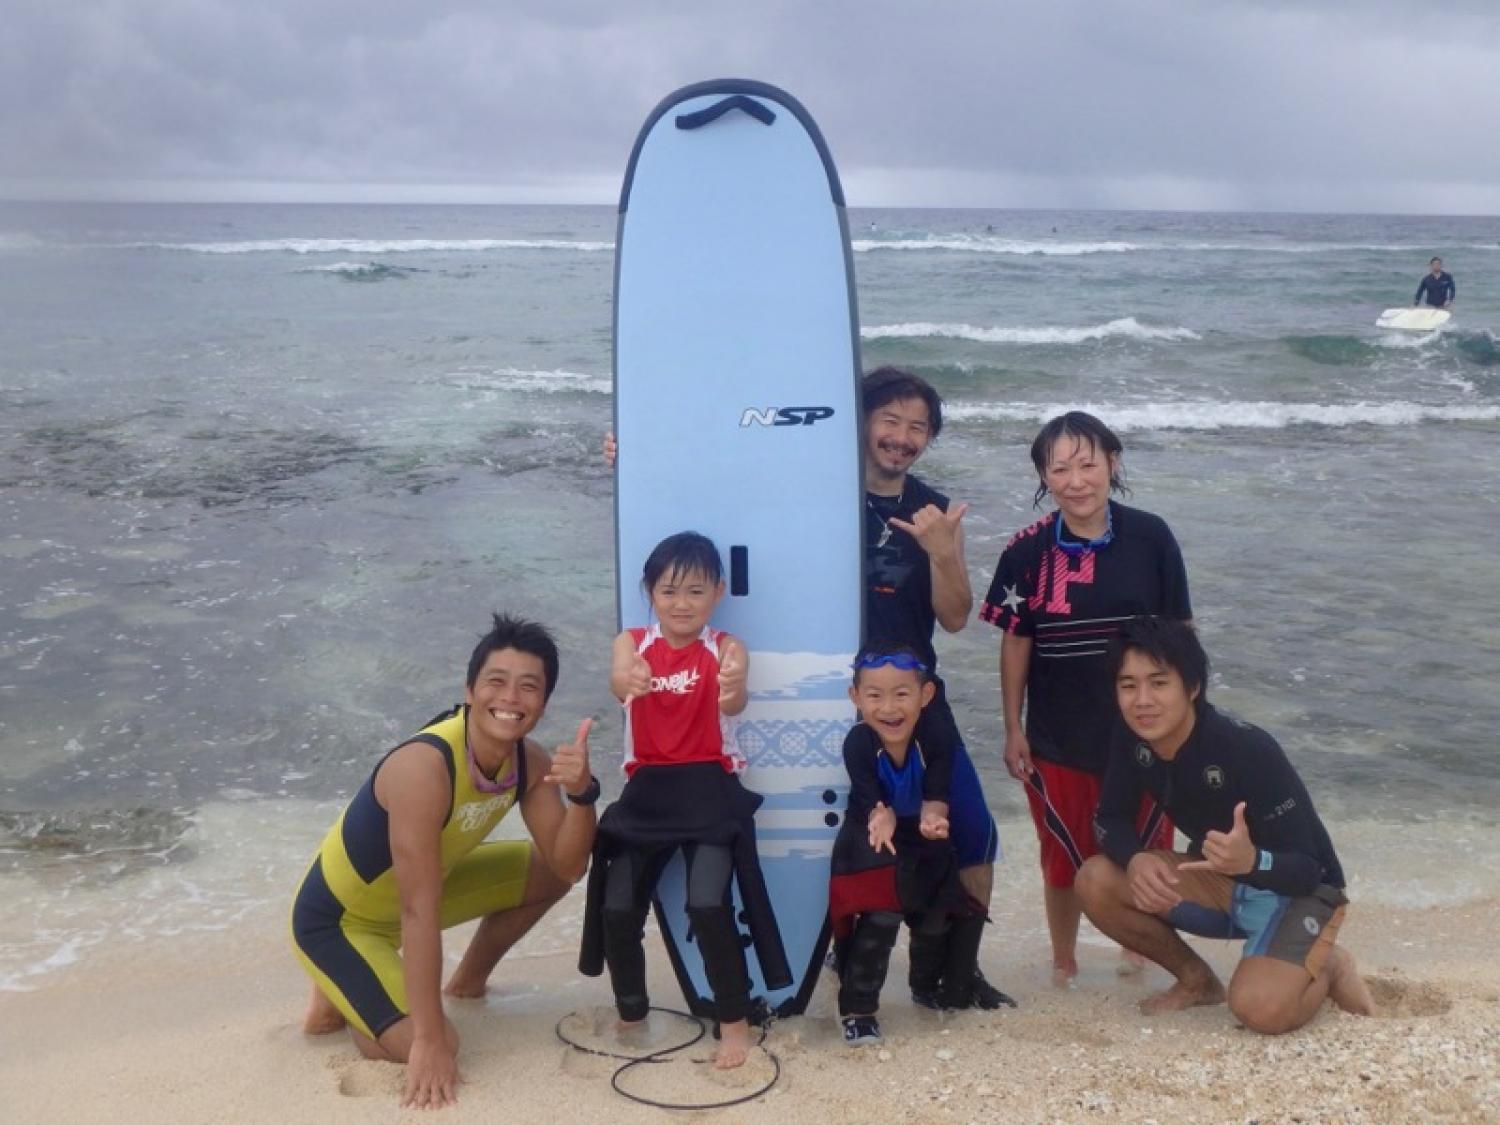 サーフィンスクールブログ|沖縄サーフィンショップ「YES SURF」